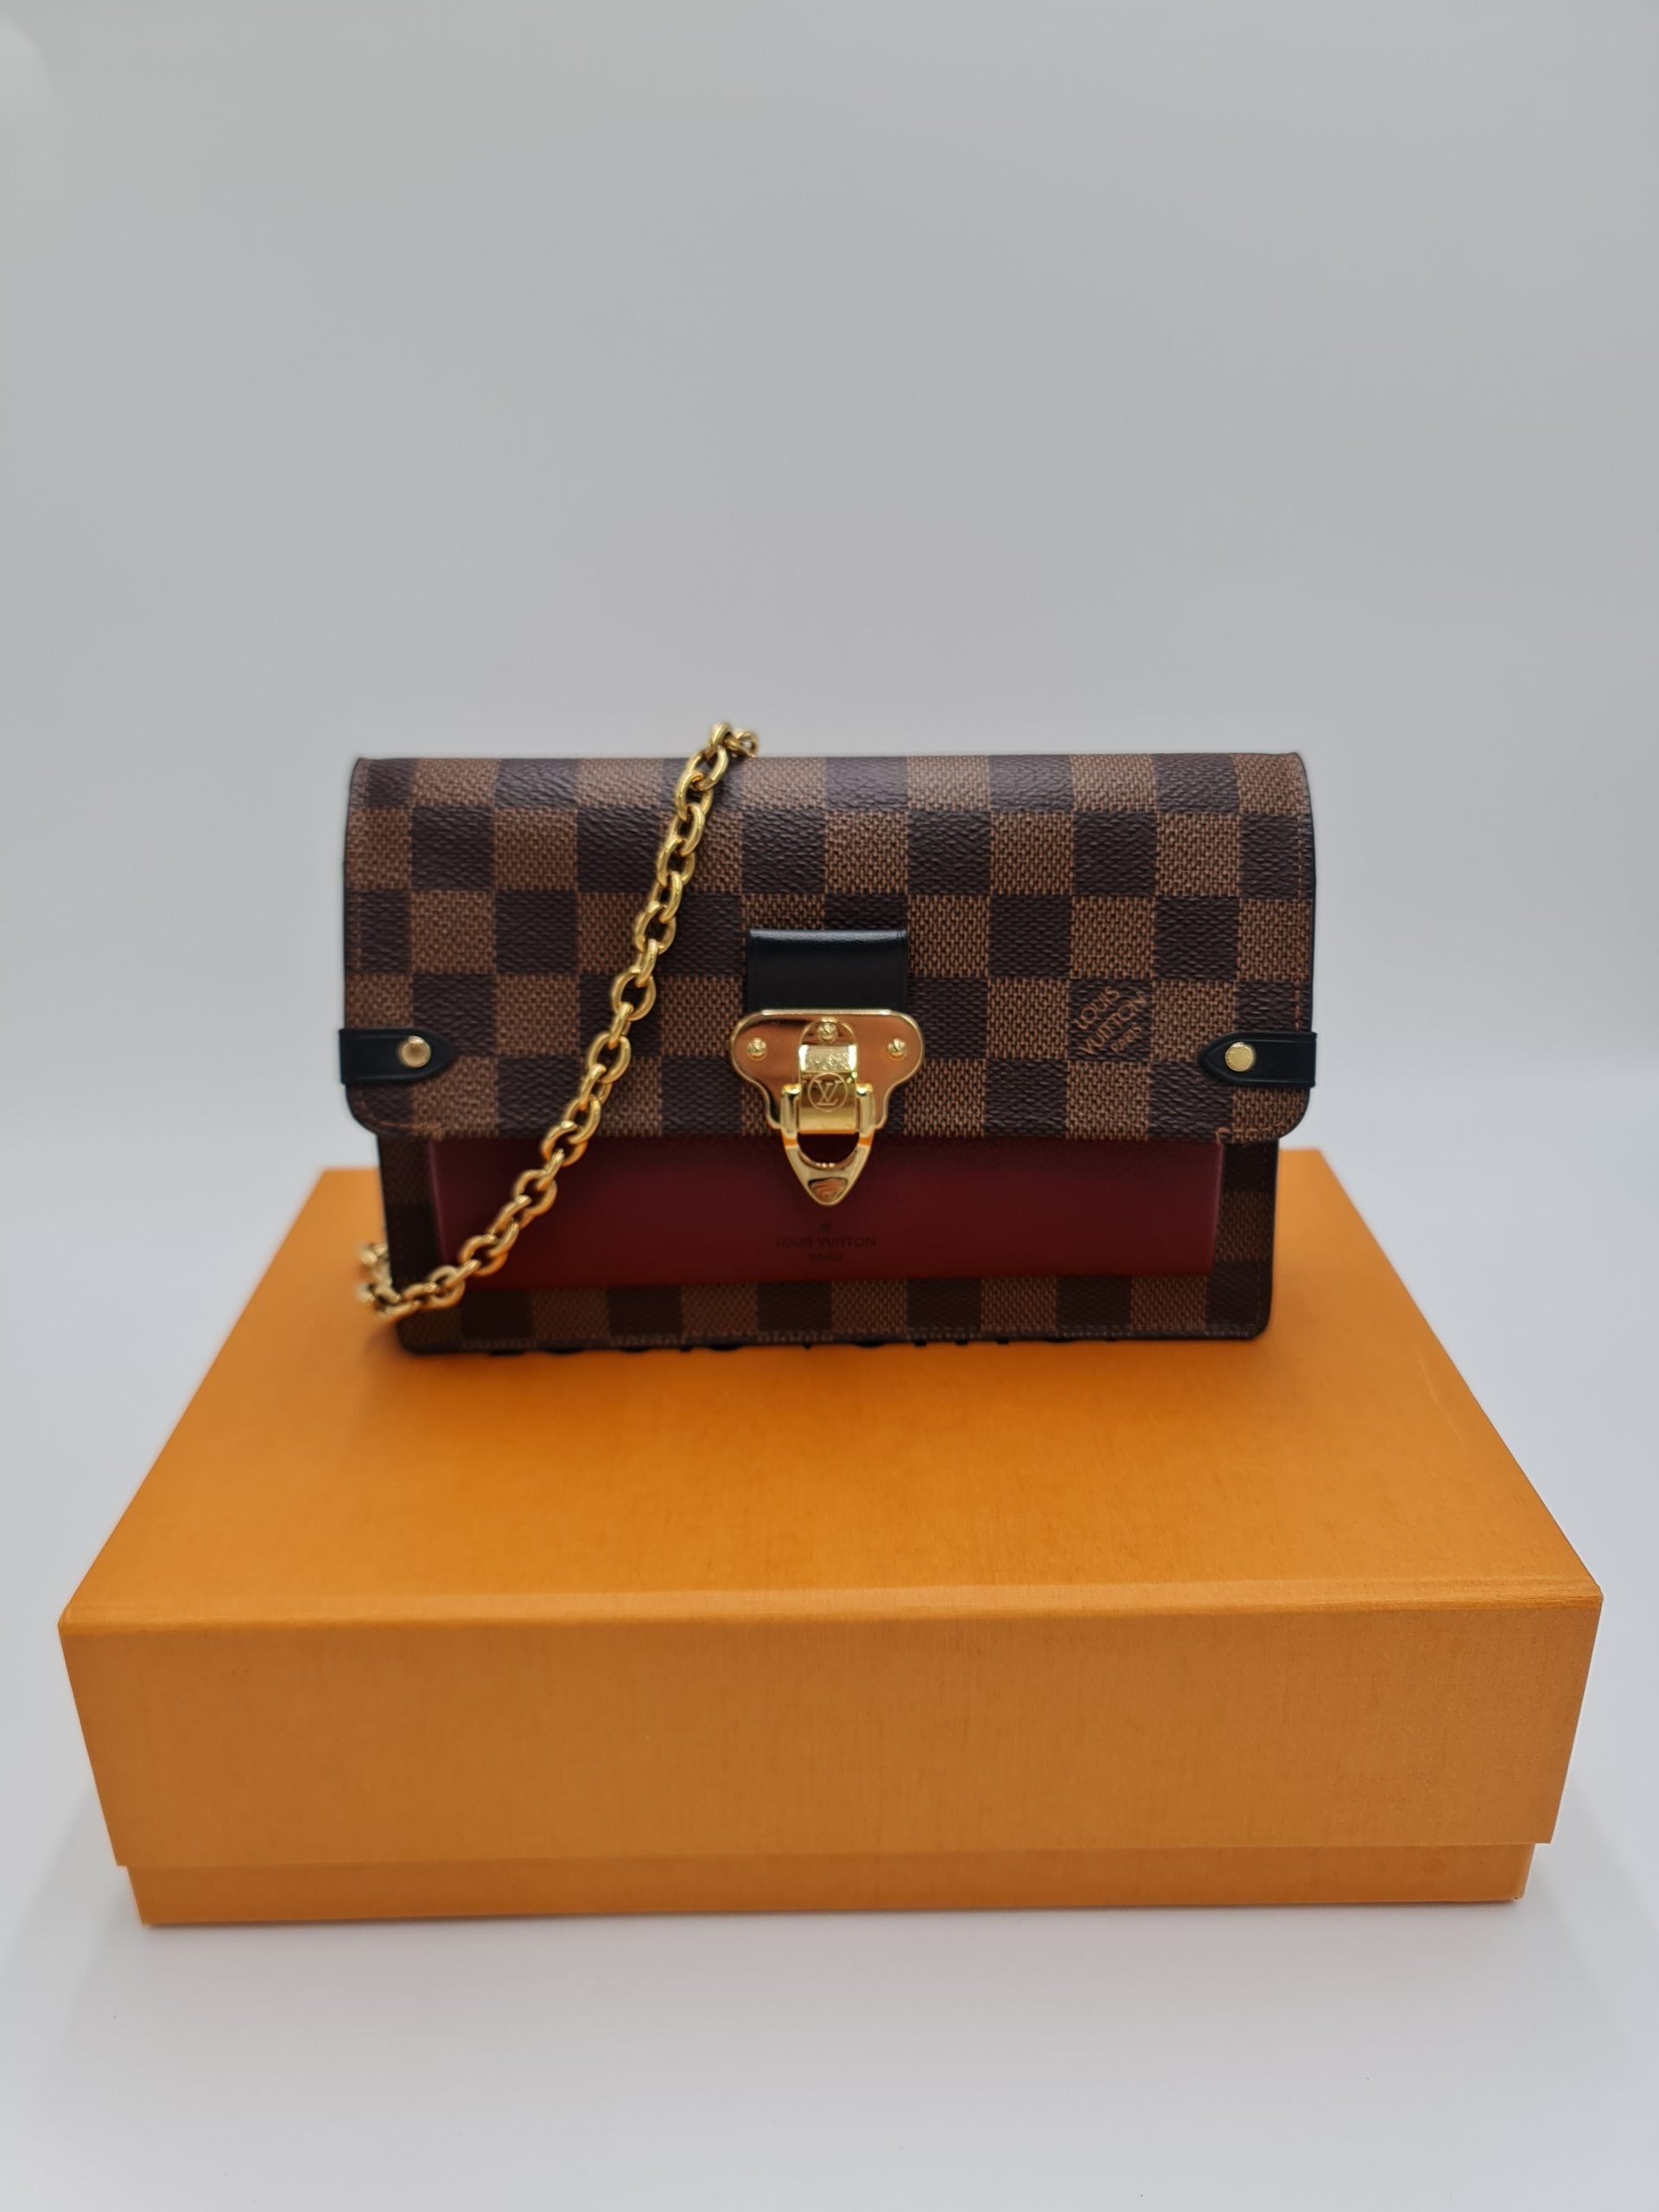 Louis Vuitton Vavin chain wallet (PORTEFEUILLE CHAINE VAVIN